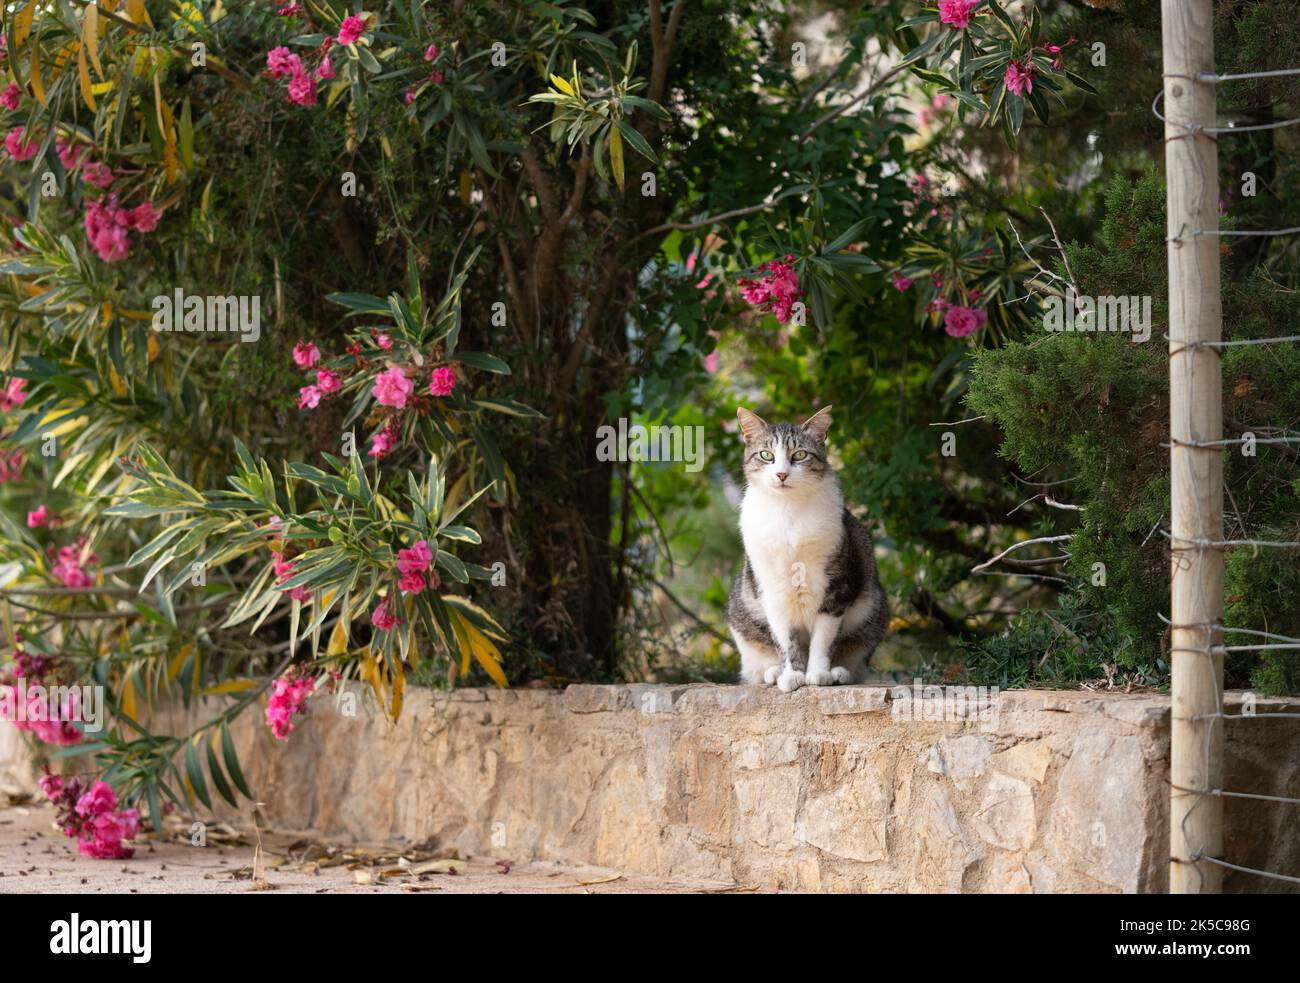 tabby bianco gatto randagio con l'orecchio capovolto seduto sulla parete bassa o murale accanto alla pianta fioritura a mallorca, spagna Foto Stock